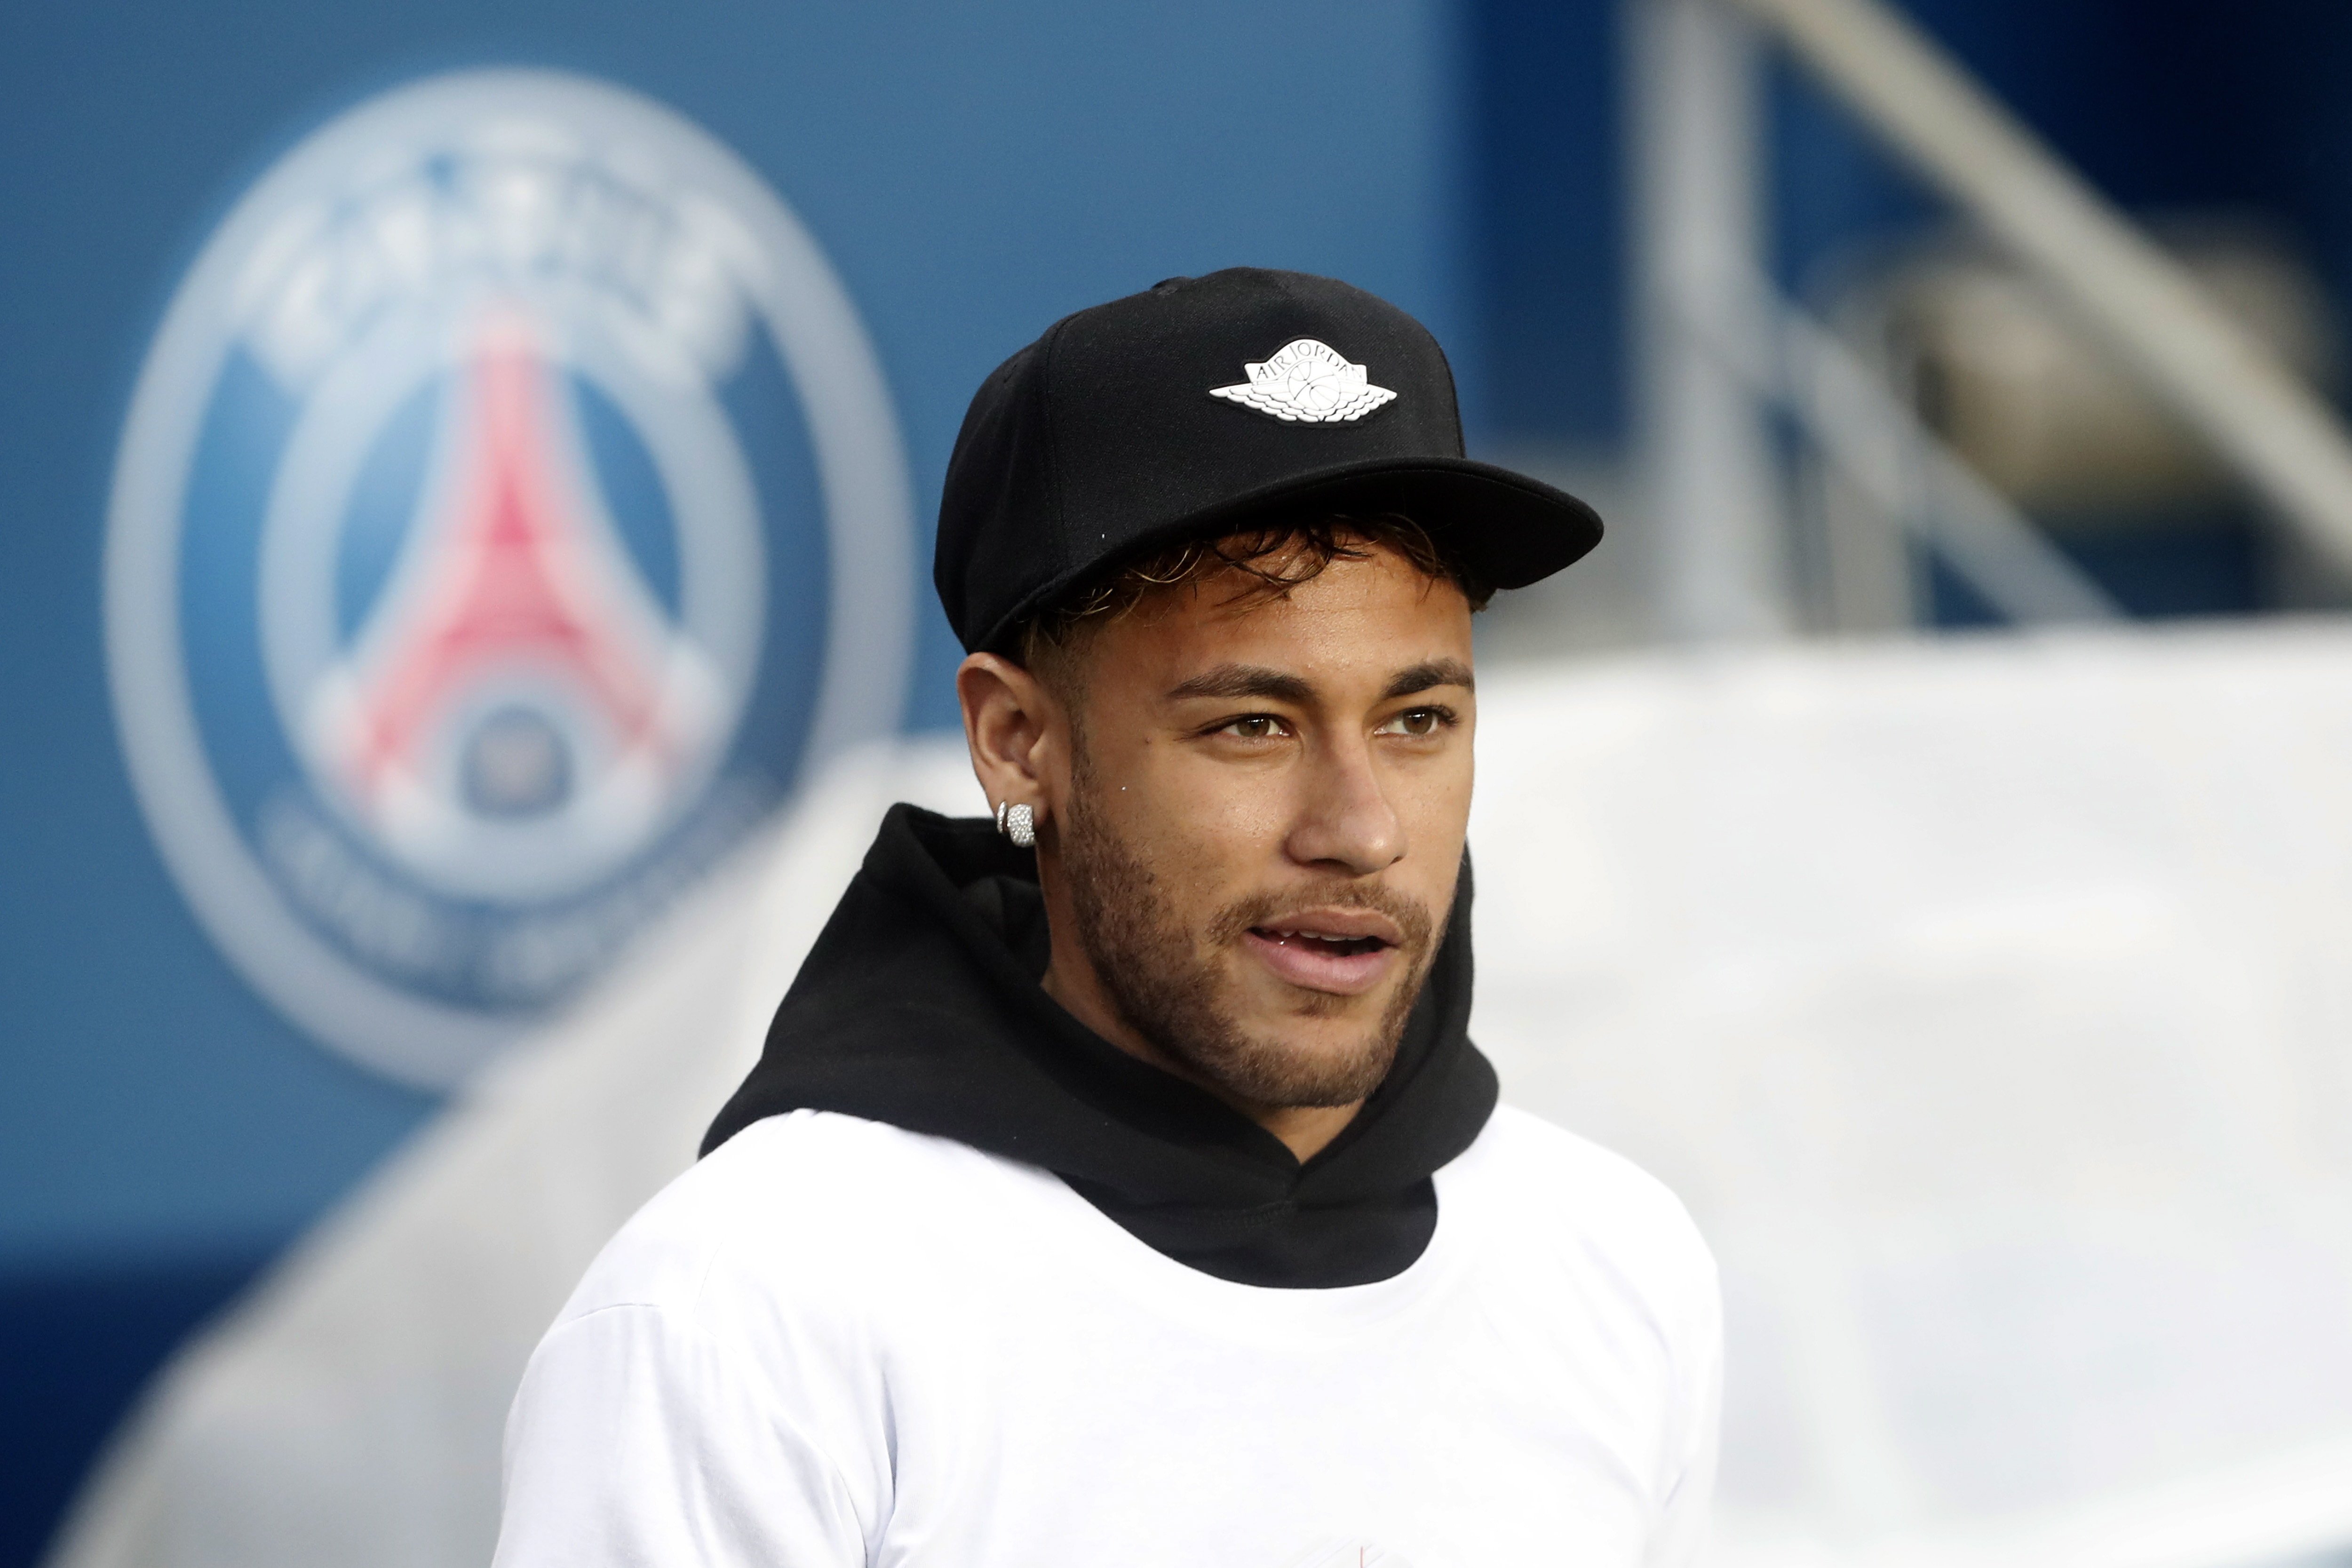 Neymar, jutjat a Madrid per corrupció i estafa